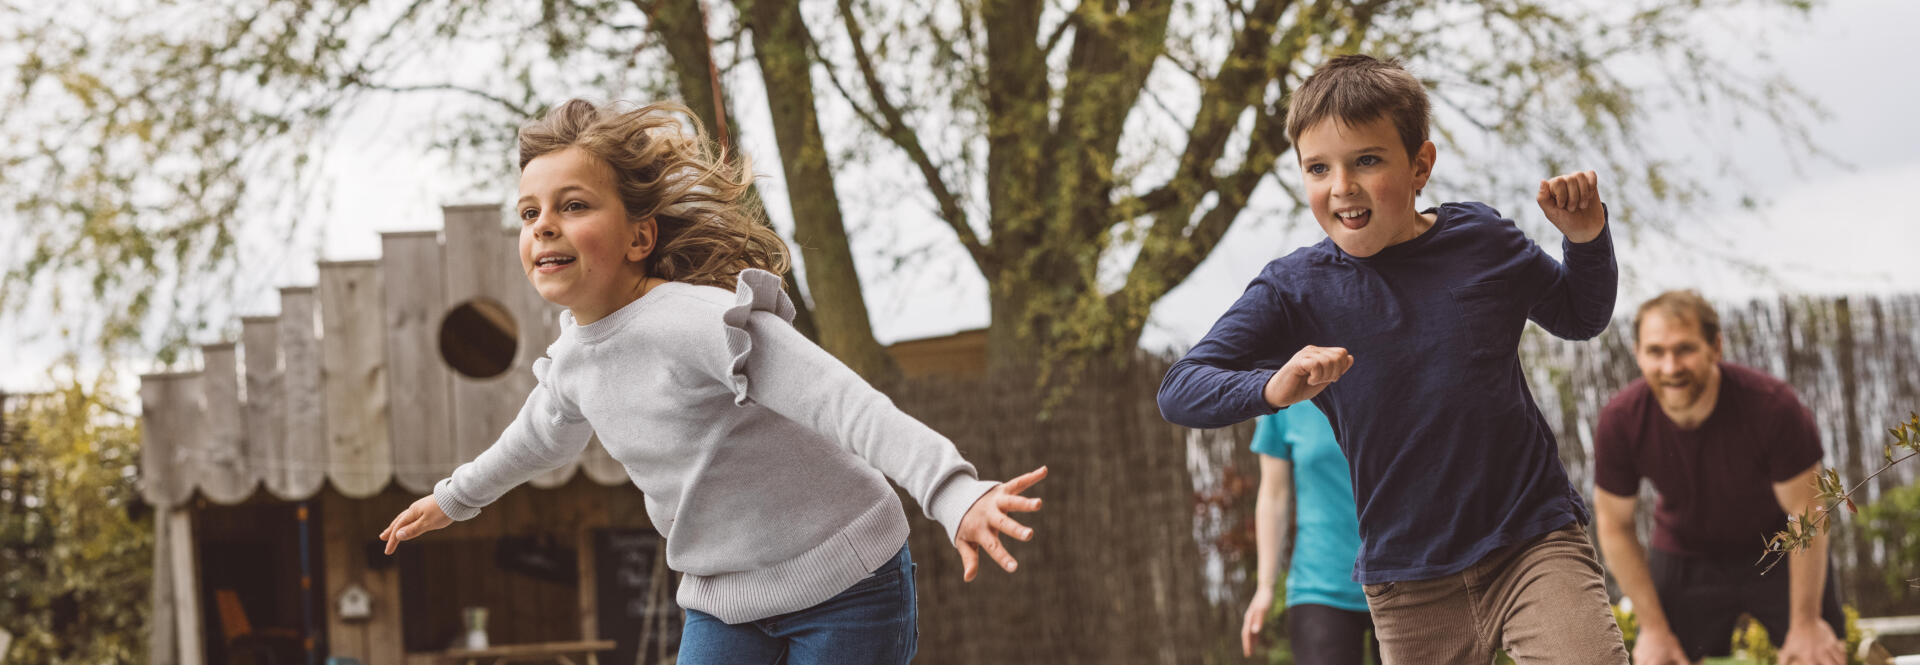 Jeux libres et activités : quel équilibre avant 3 ans pour des enfants  heureux ?